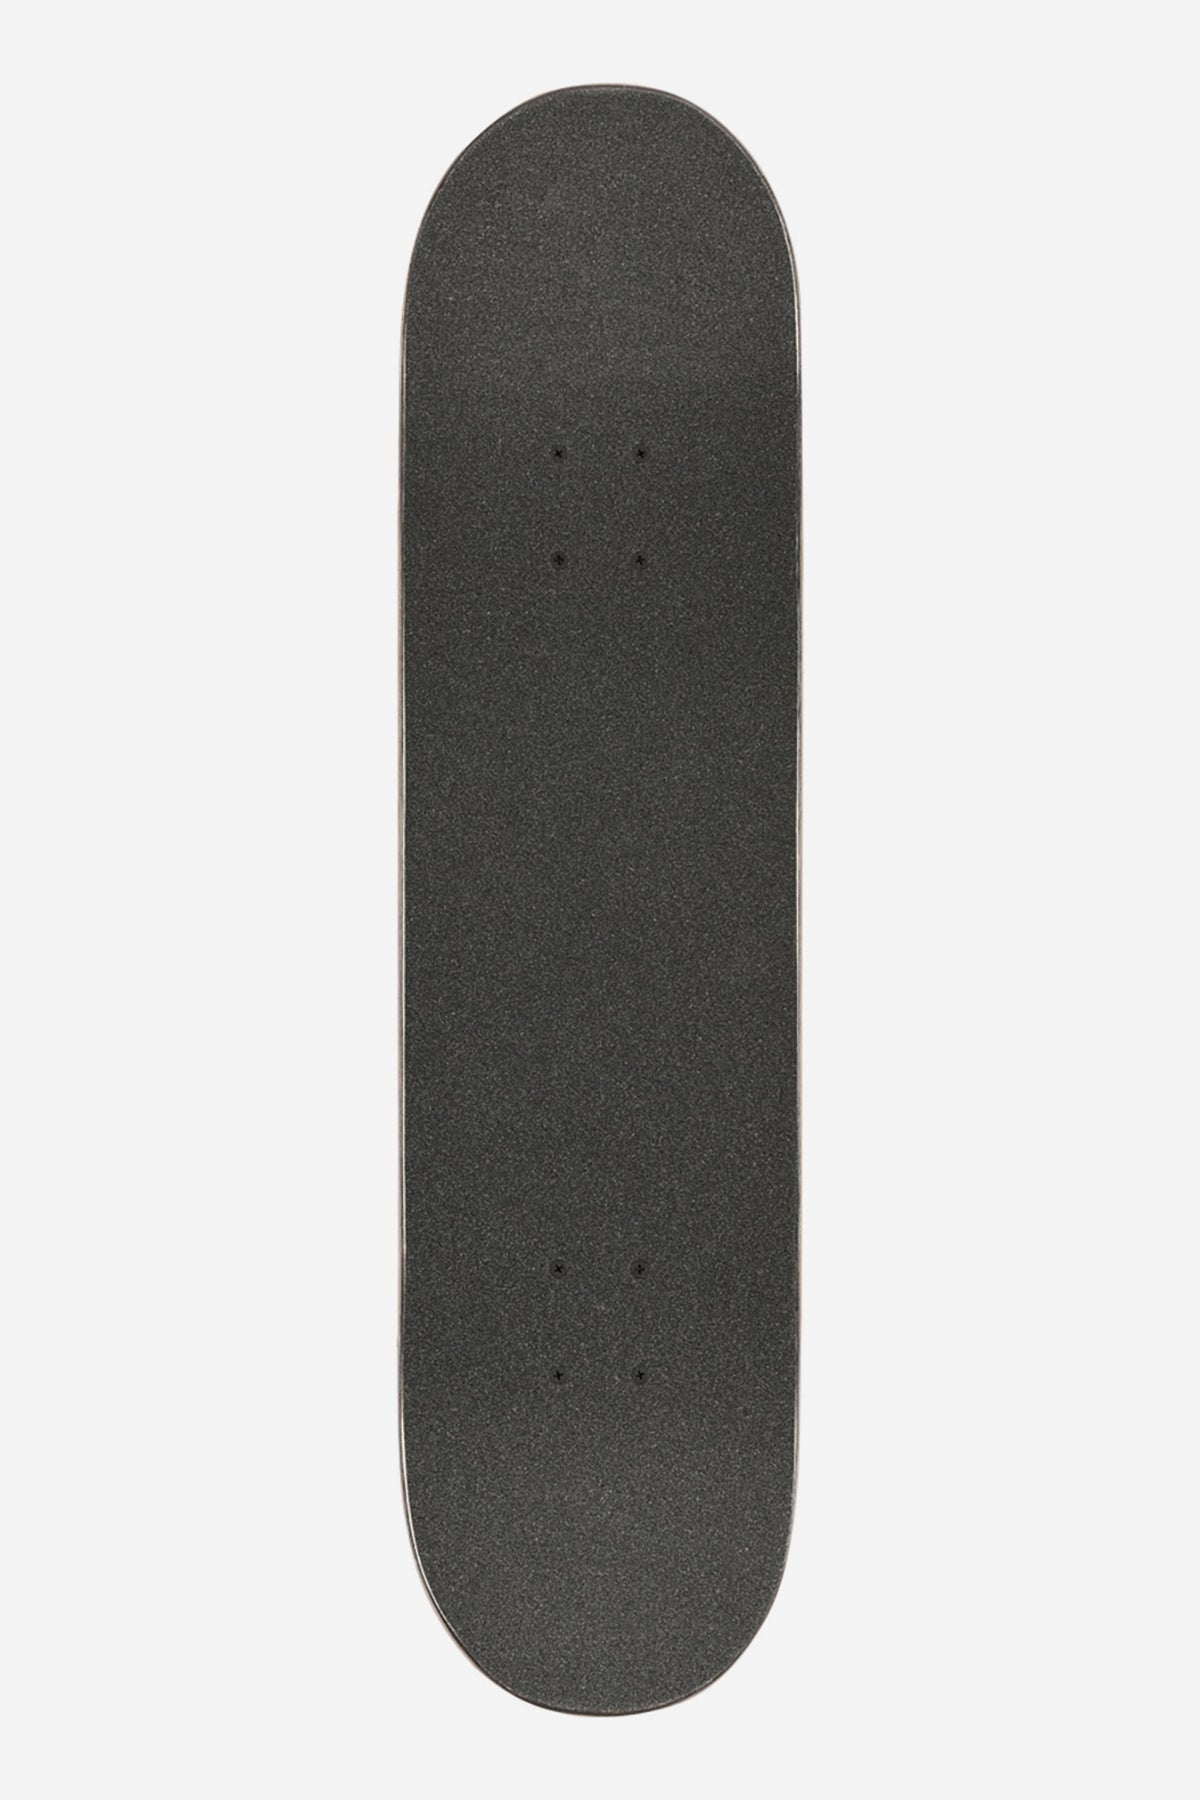 Globe - Goodstock - Navy - 7.875" Complete Skateboard